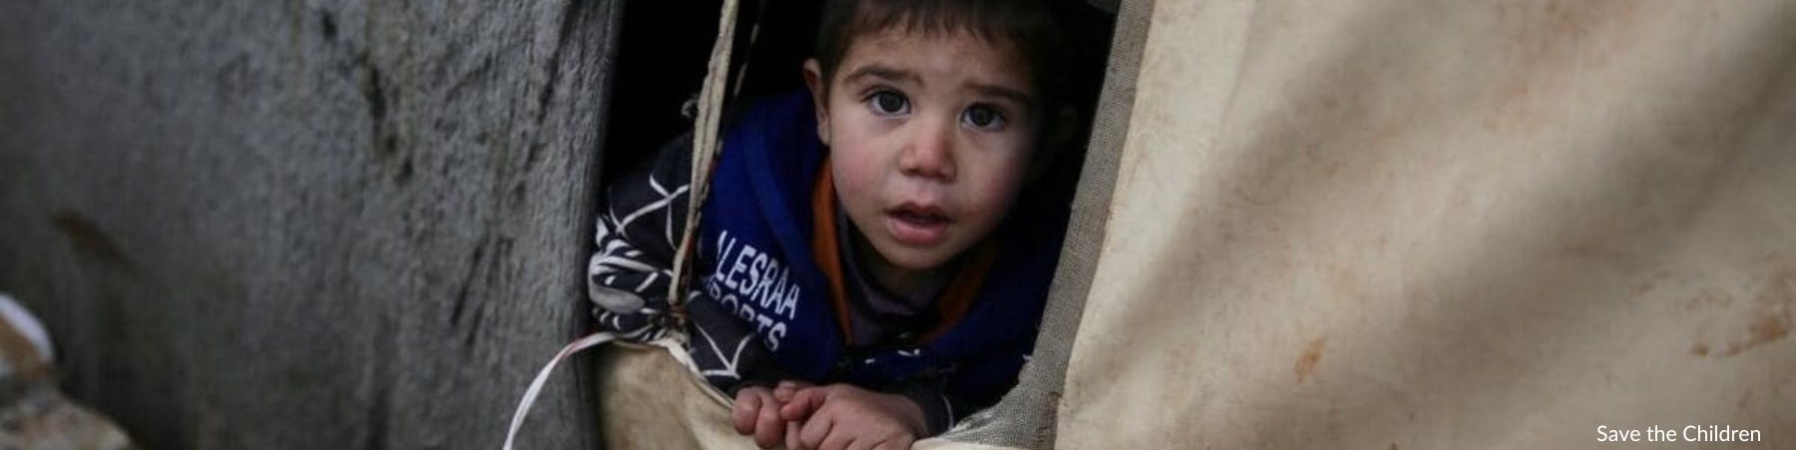 Karim bambino siriano che fuoriesce da tenda del campo profughi 